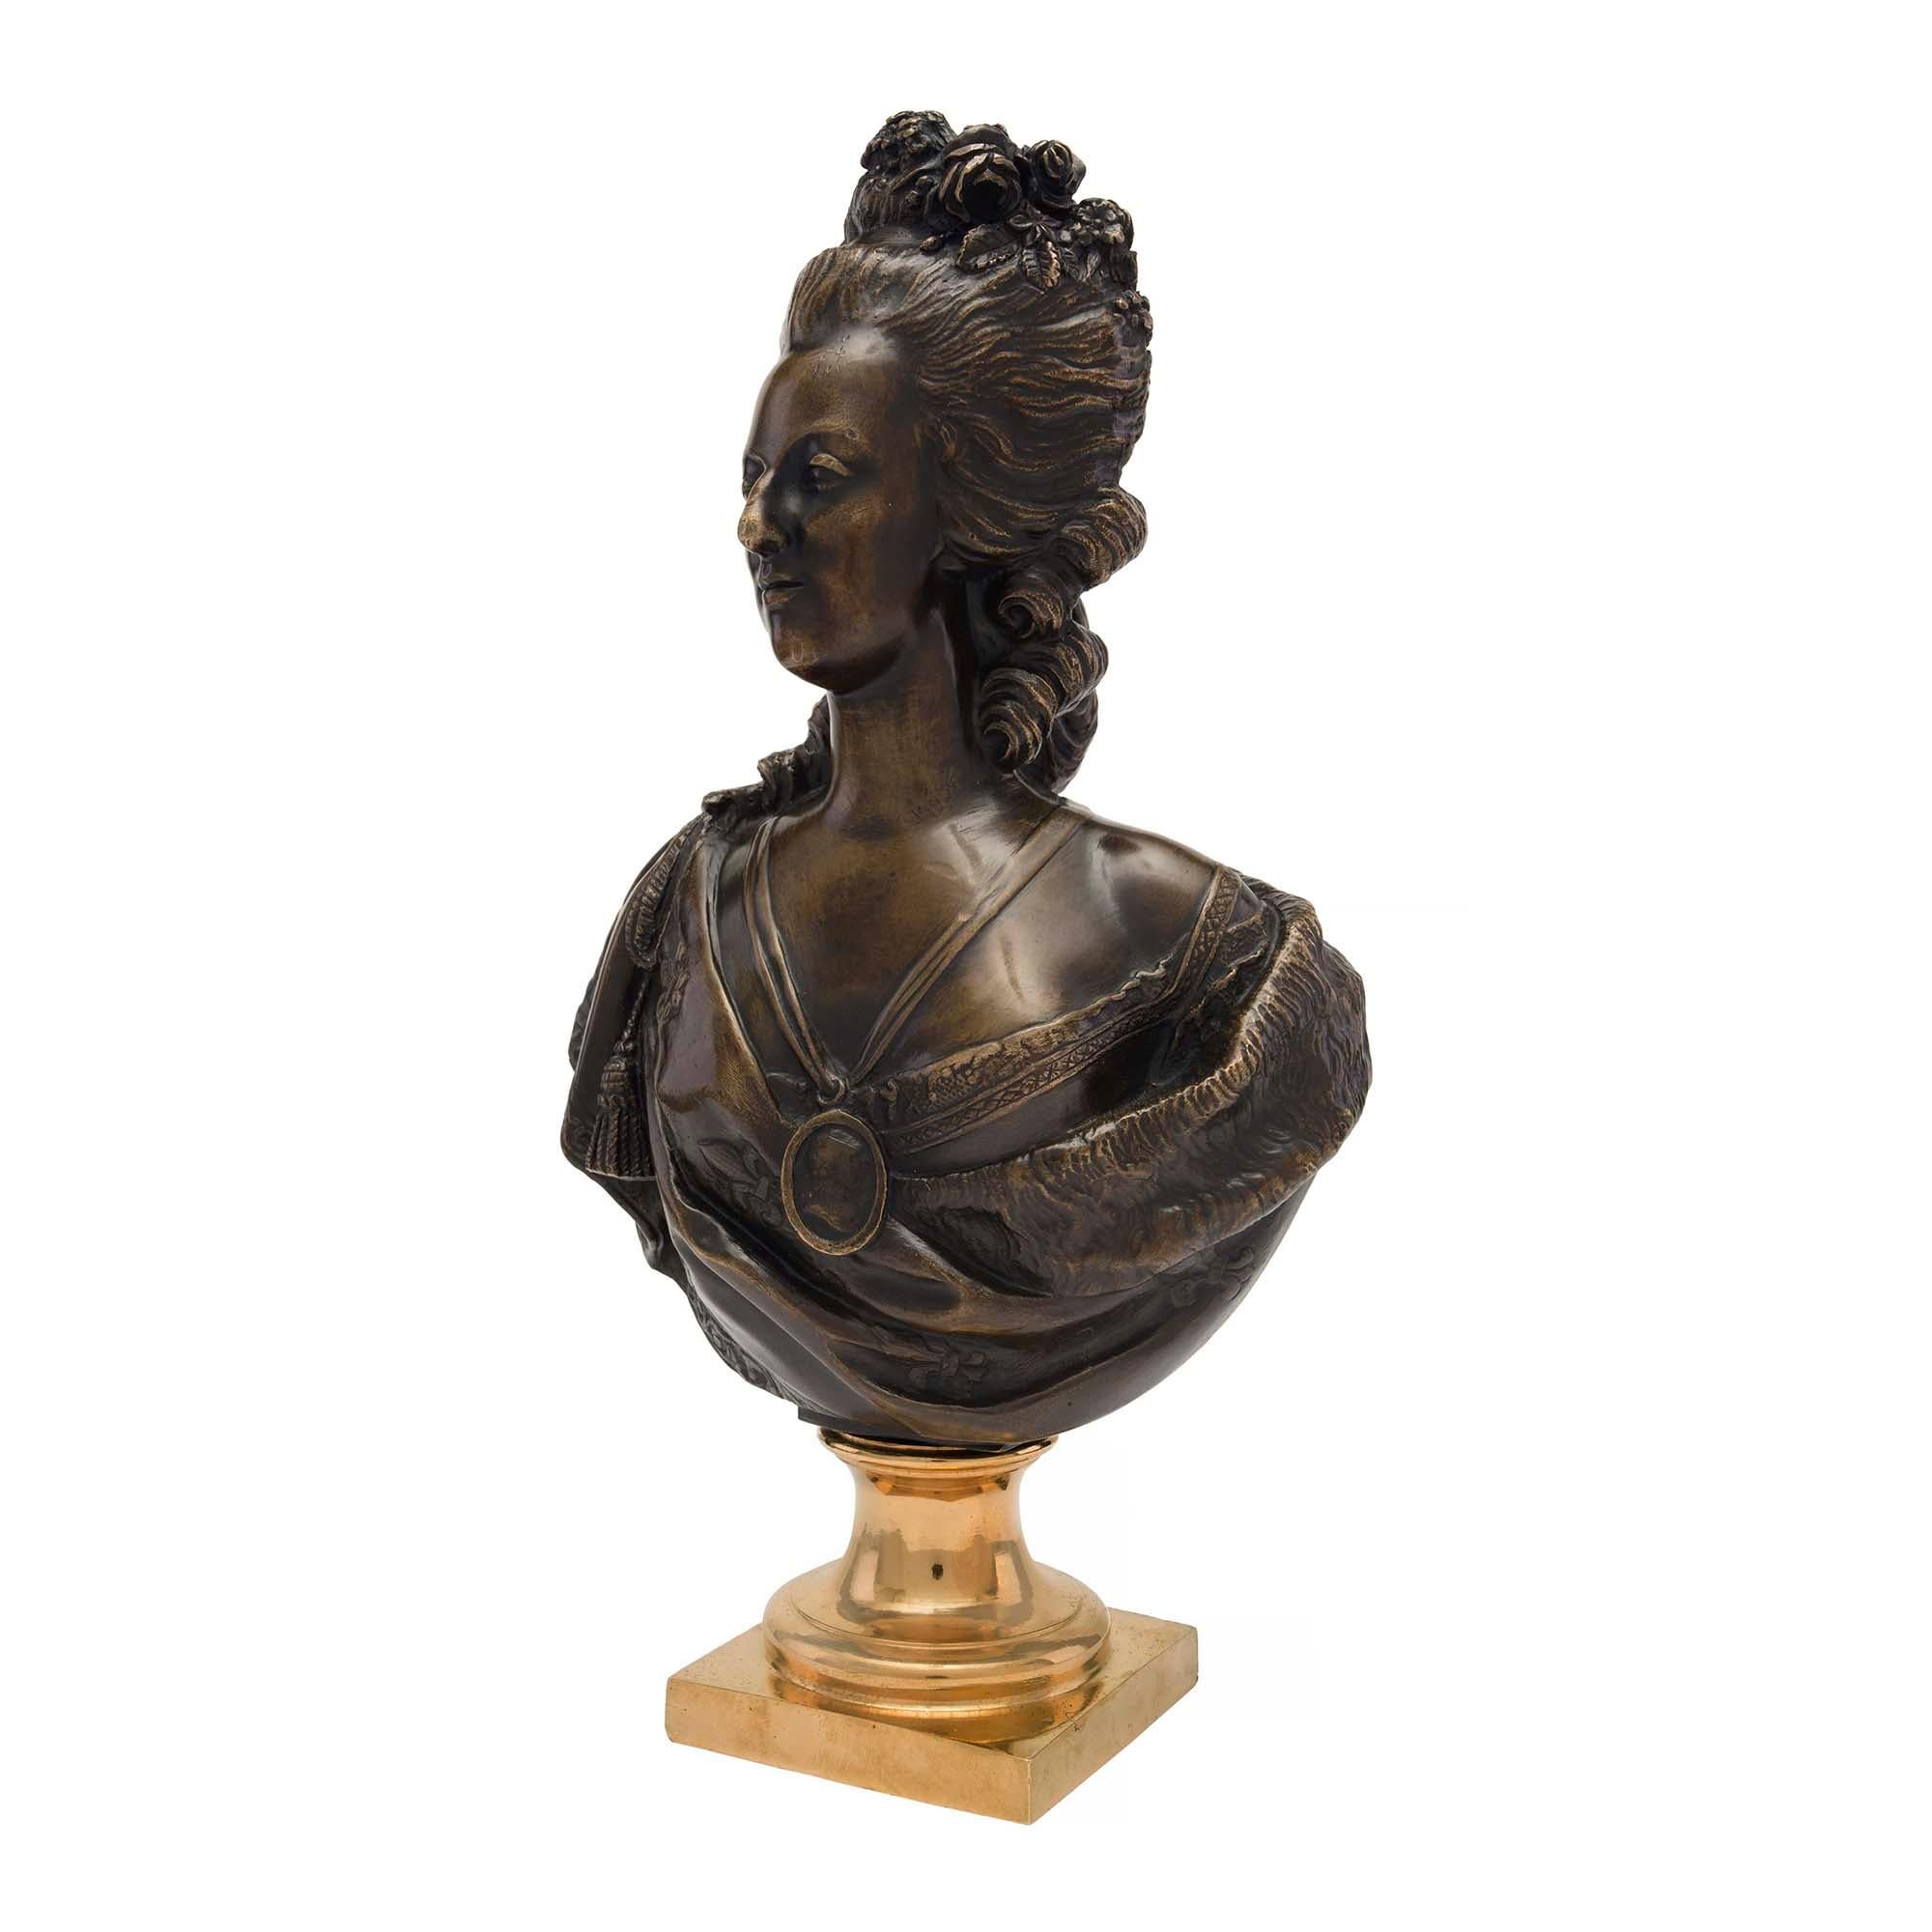 Magnifique buste de Marie-Antoinette en bronze patiné et bronze doré du XIXe siècle signé par Houdon. Le buste de grande qualité est surélevé par une base carrée en bronze doré et un piédestal à socle moucheté. Le buste en bronze patiné richement